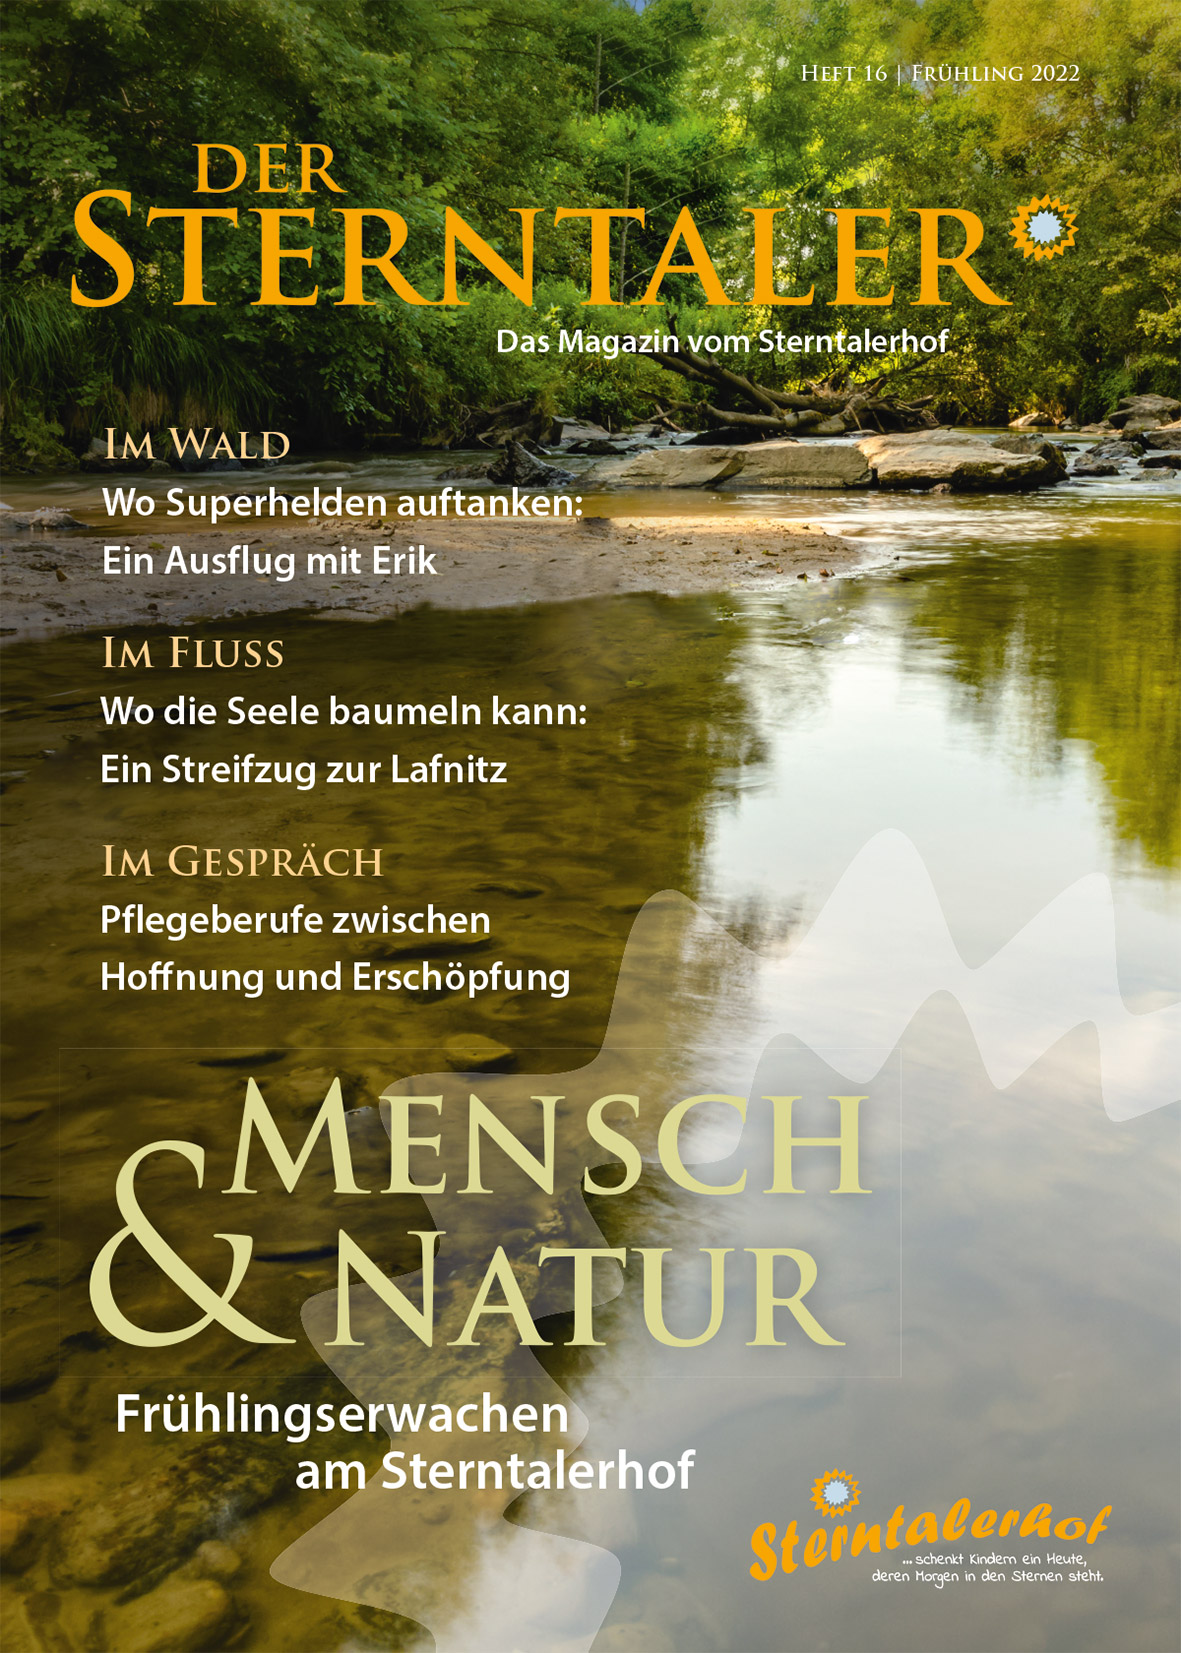 Der Sterntaler - Ausgabe 15, Winter 2021/22